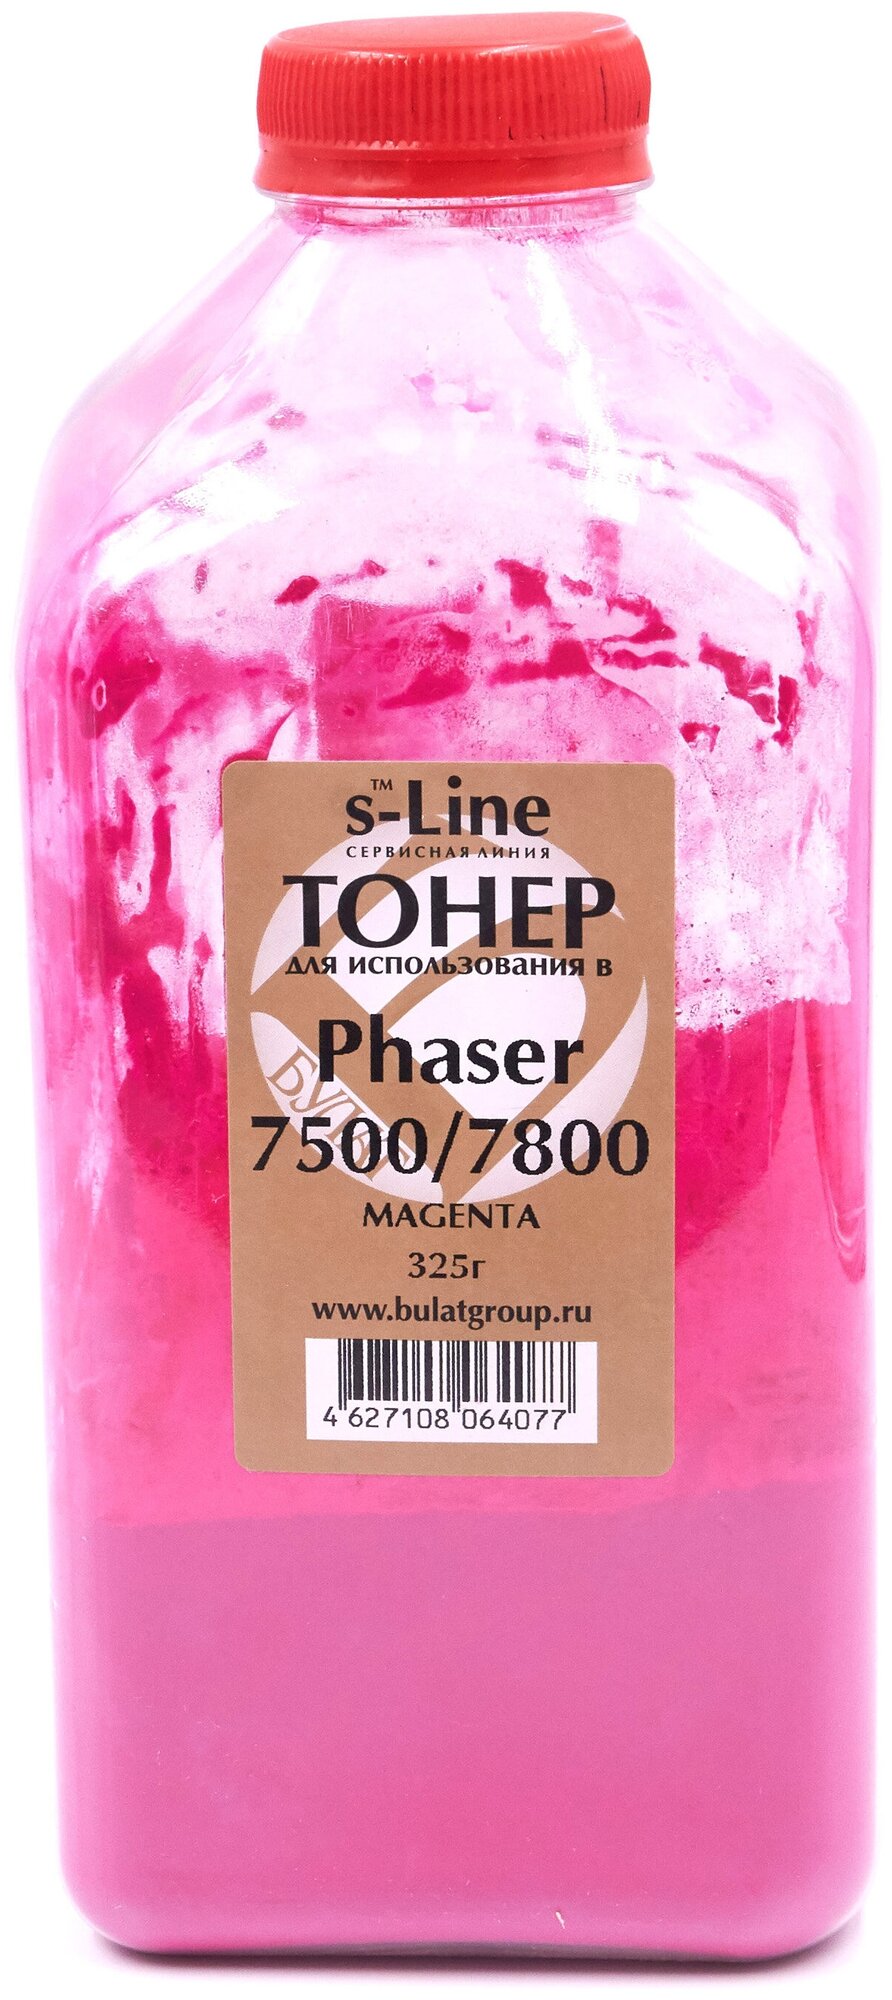 Тонер с девелопером булат s-Line Phaser 7500 для Xerox Phaser 7500, Phaser 7800 (Пурпурный, банка 325 г)